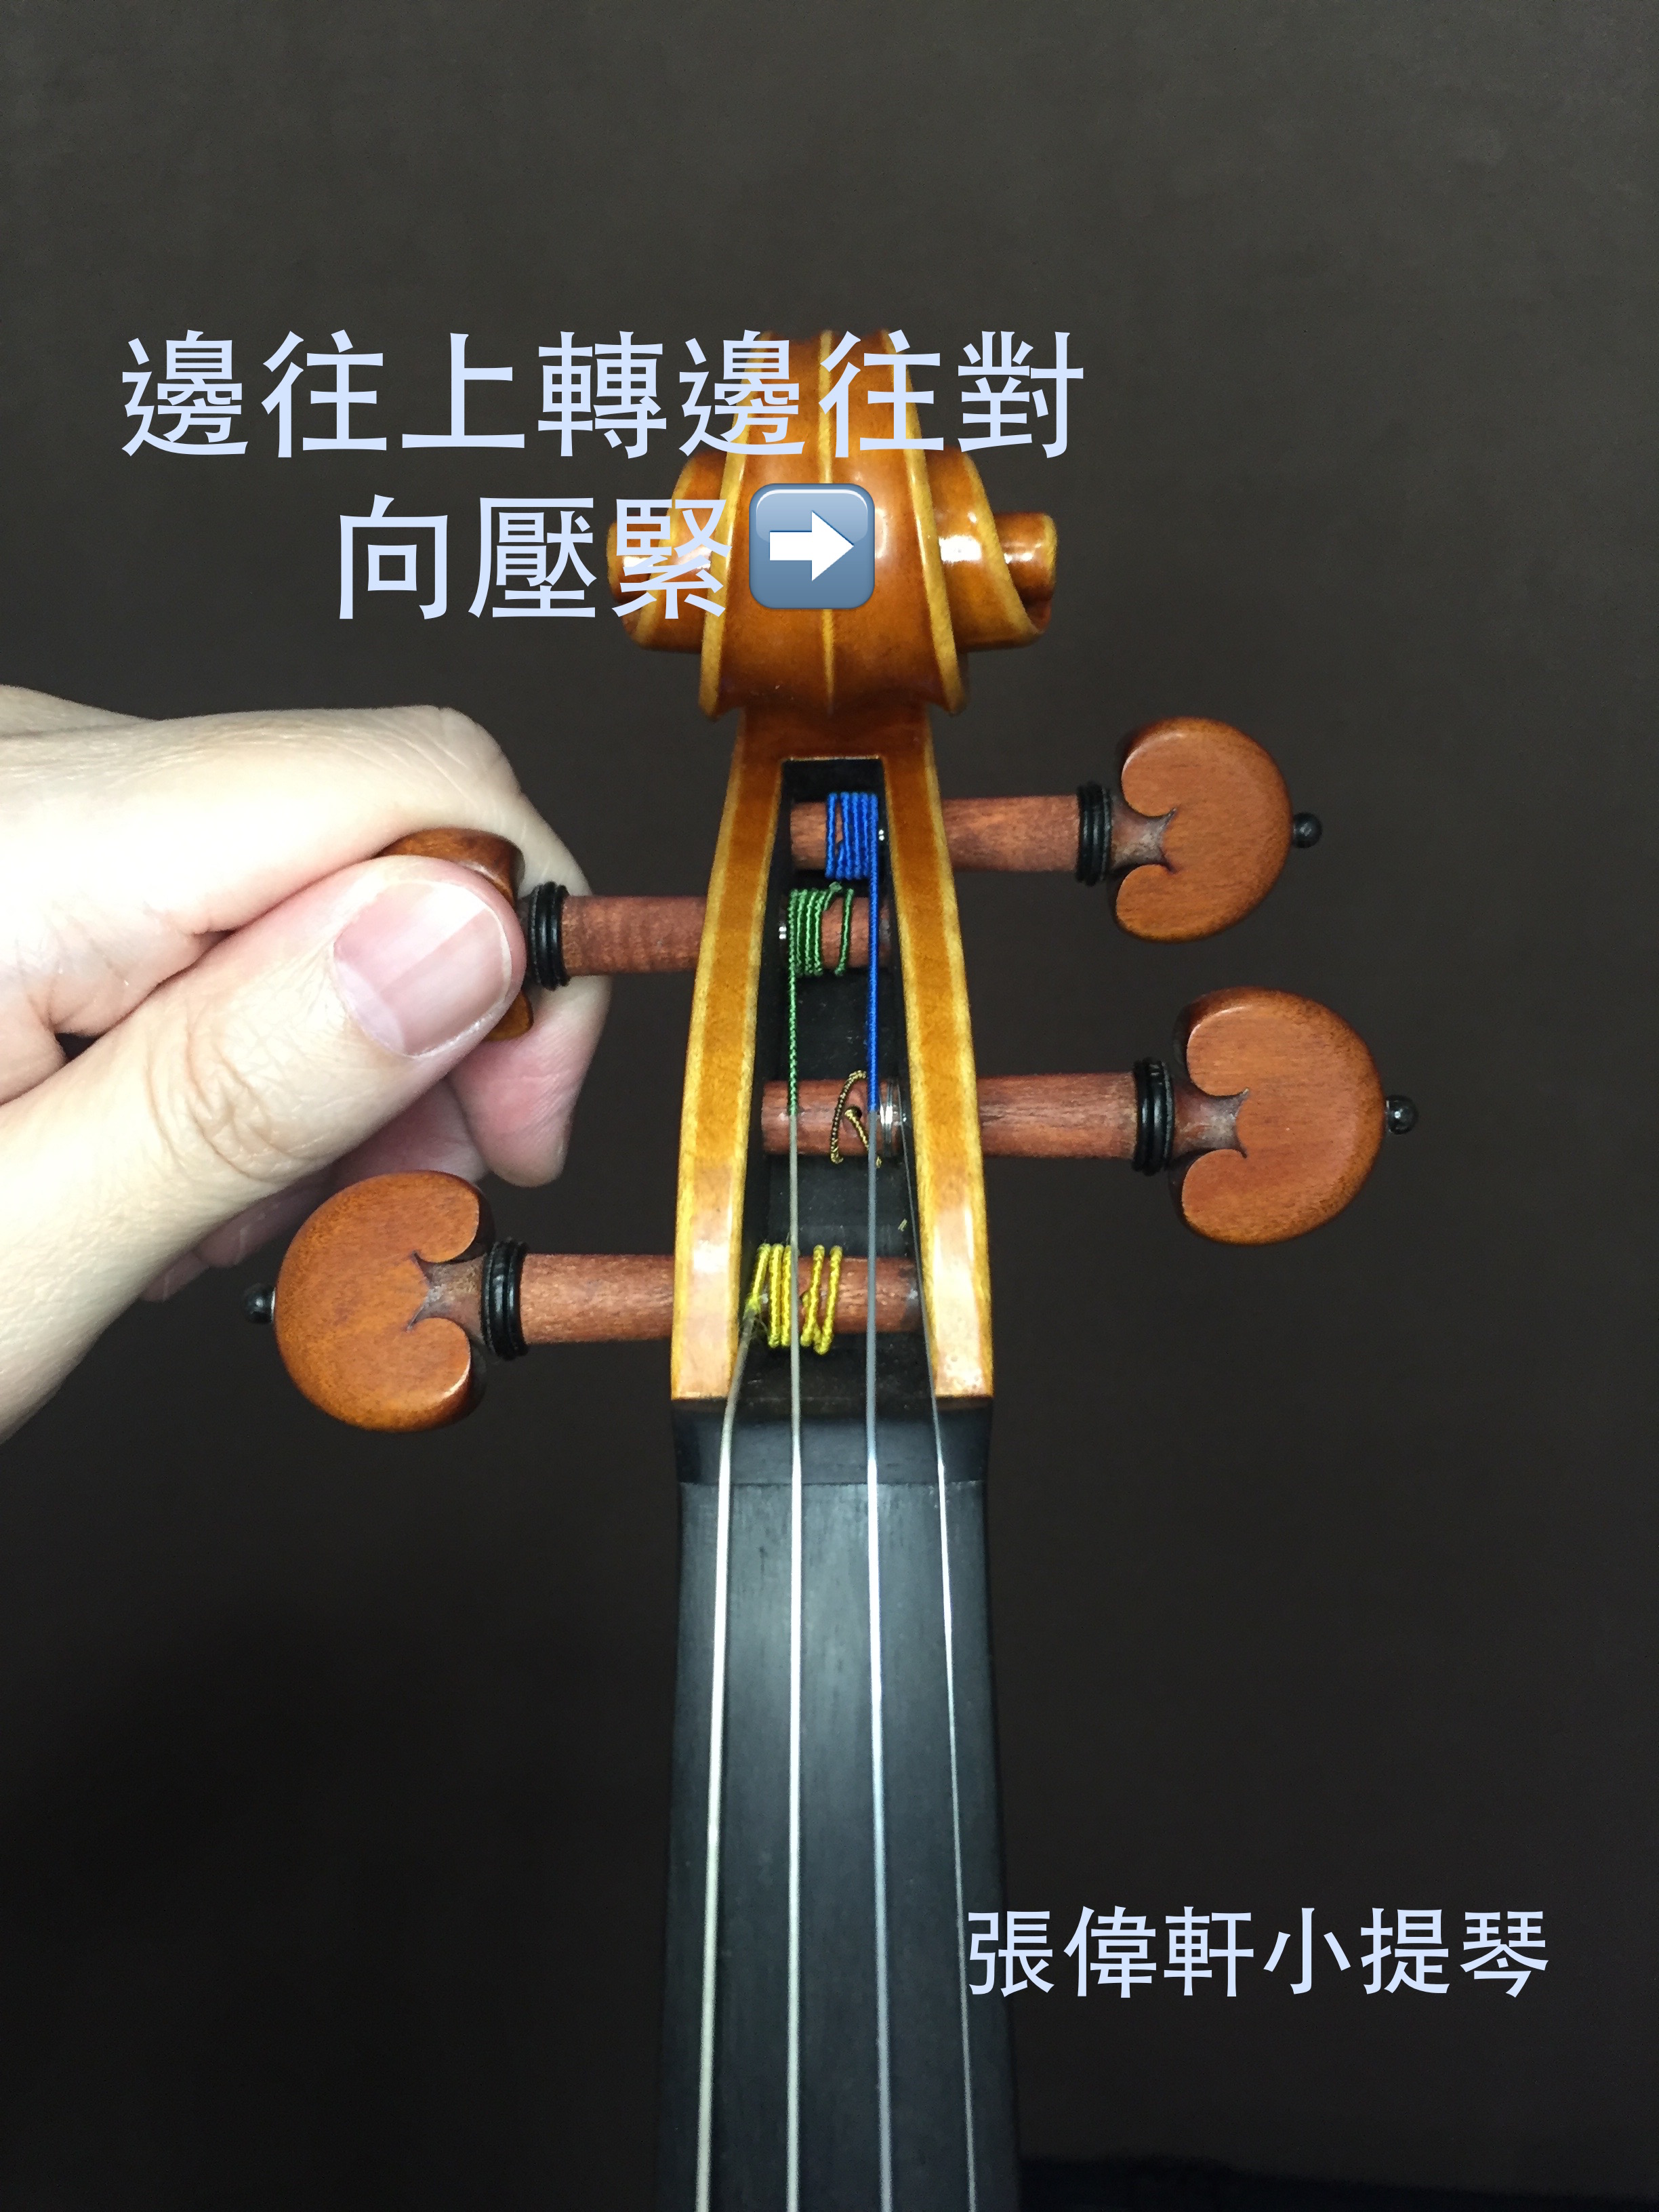 小提琴如何換弦？正確的換弦方法、順序大公開 @
			
				張偉軒小提琴
			
		